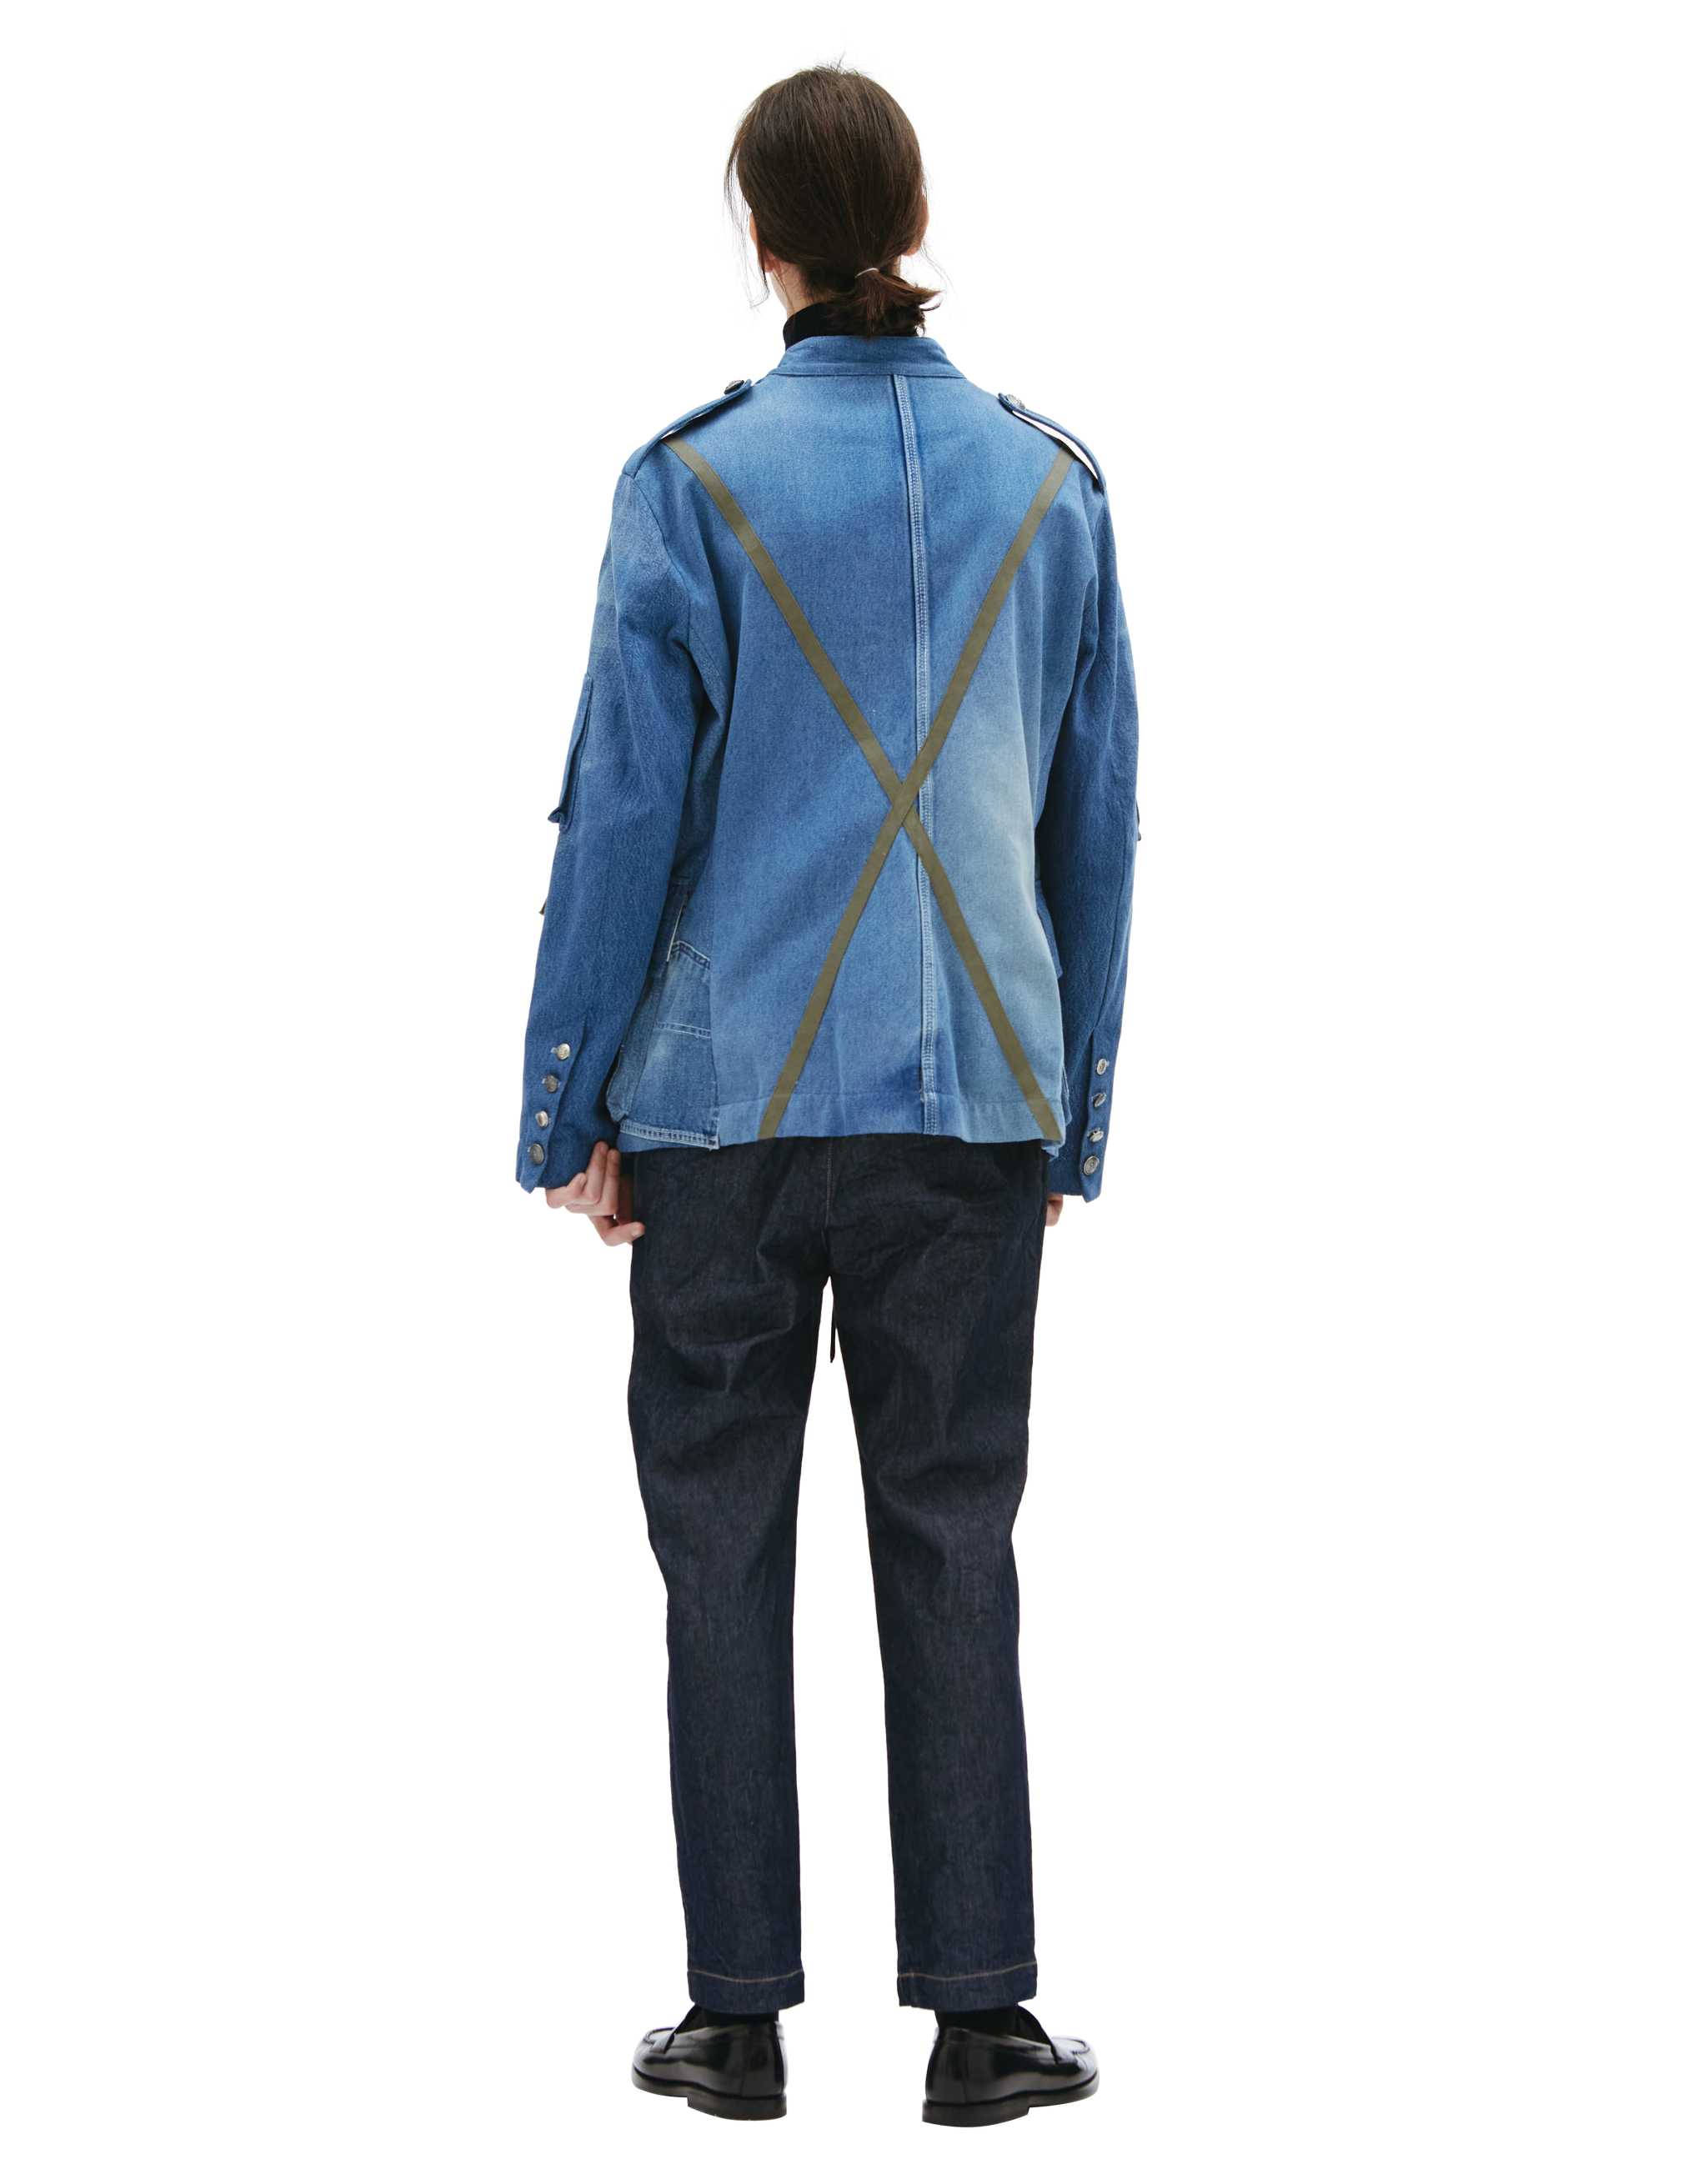 Джинсовый пиджак Officer Ollie Greg Lauren DM016, размер 5;4 - фото 4